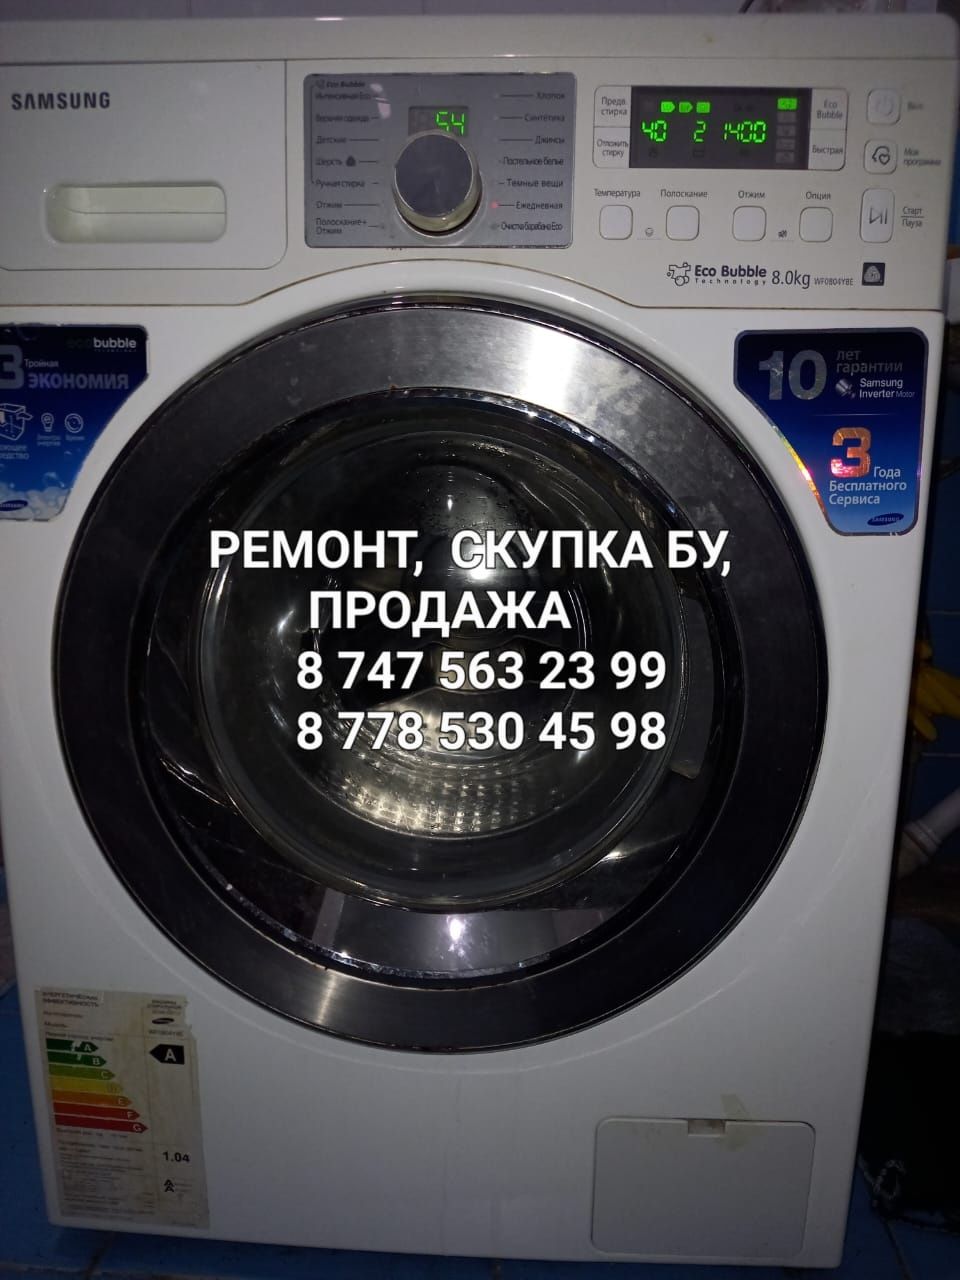 Ремонт стиральных машин, посудомоек, холодильников в Алматы